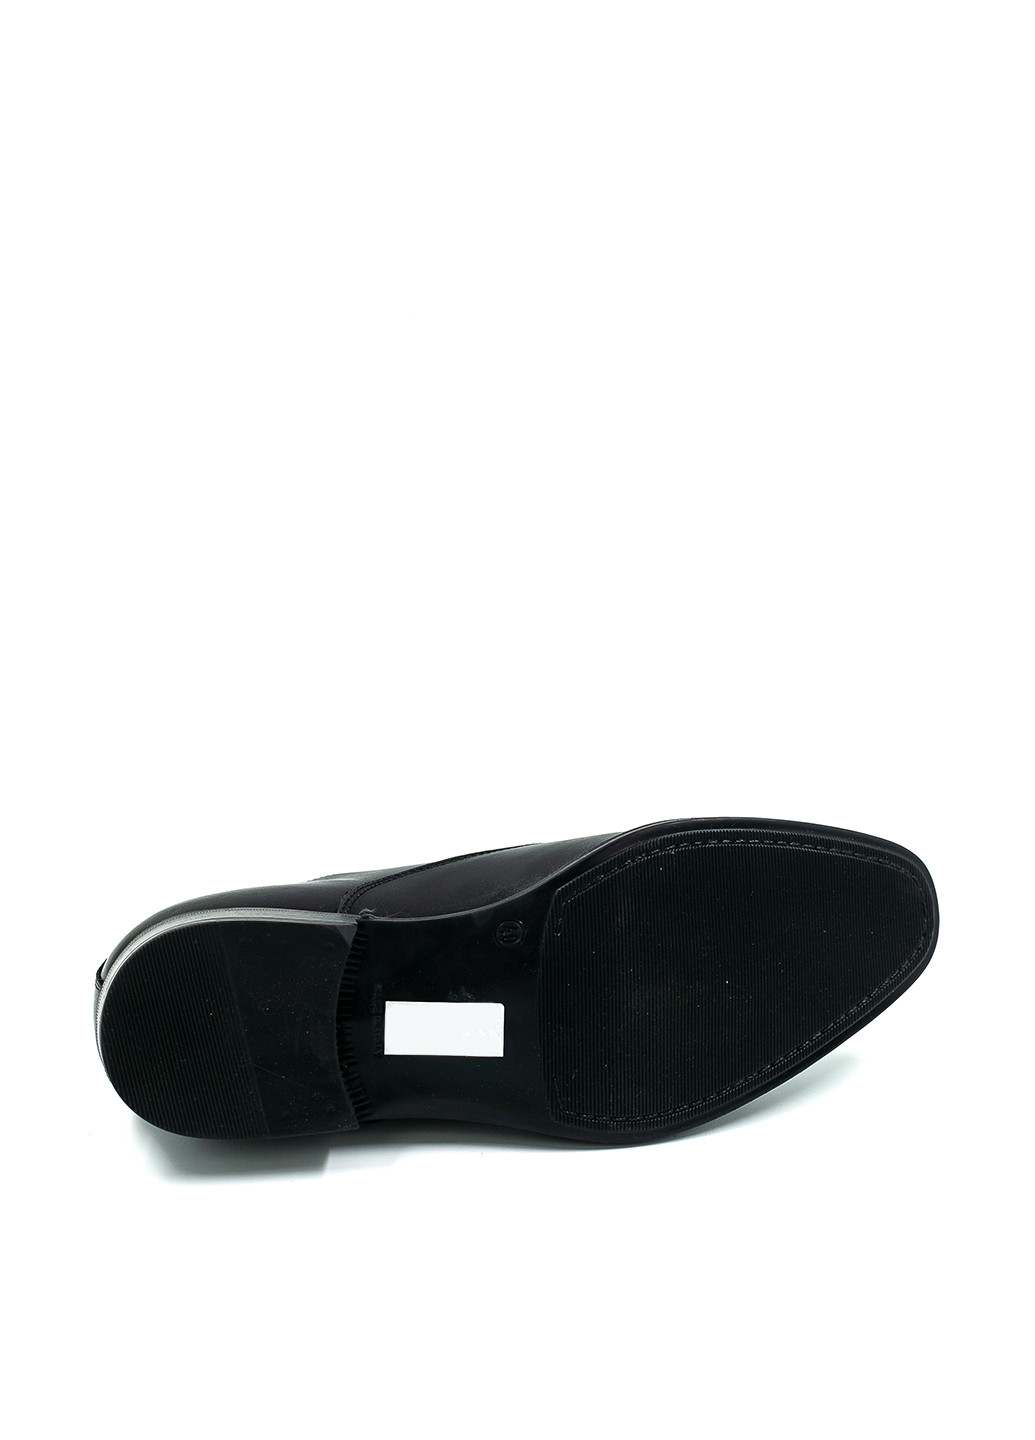 Черные кэжуал туфли Minelli на шнурках